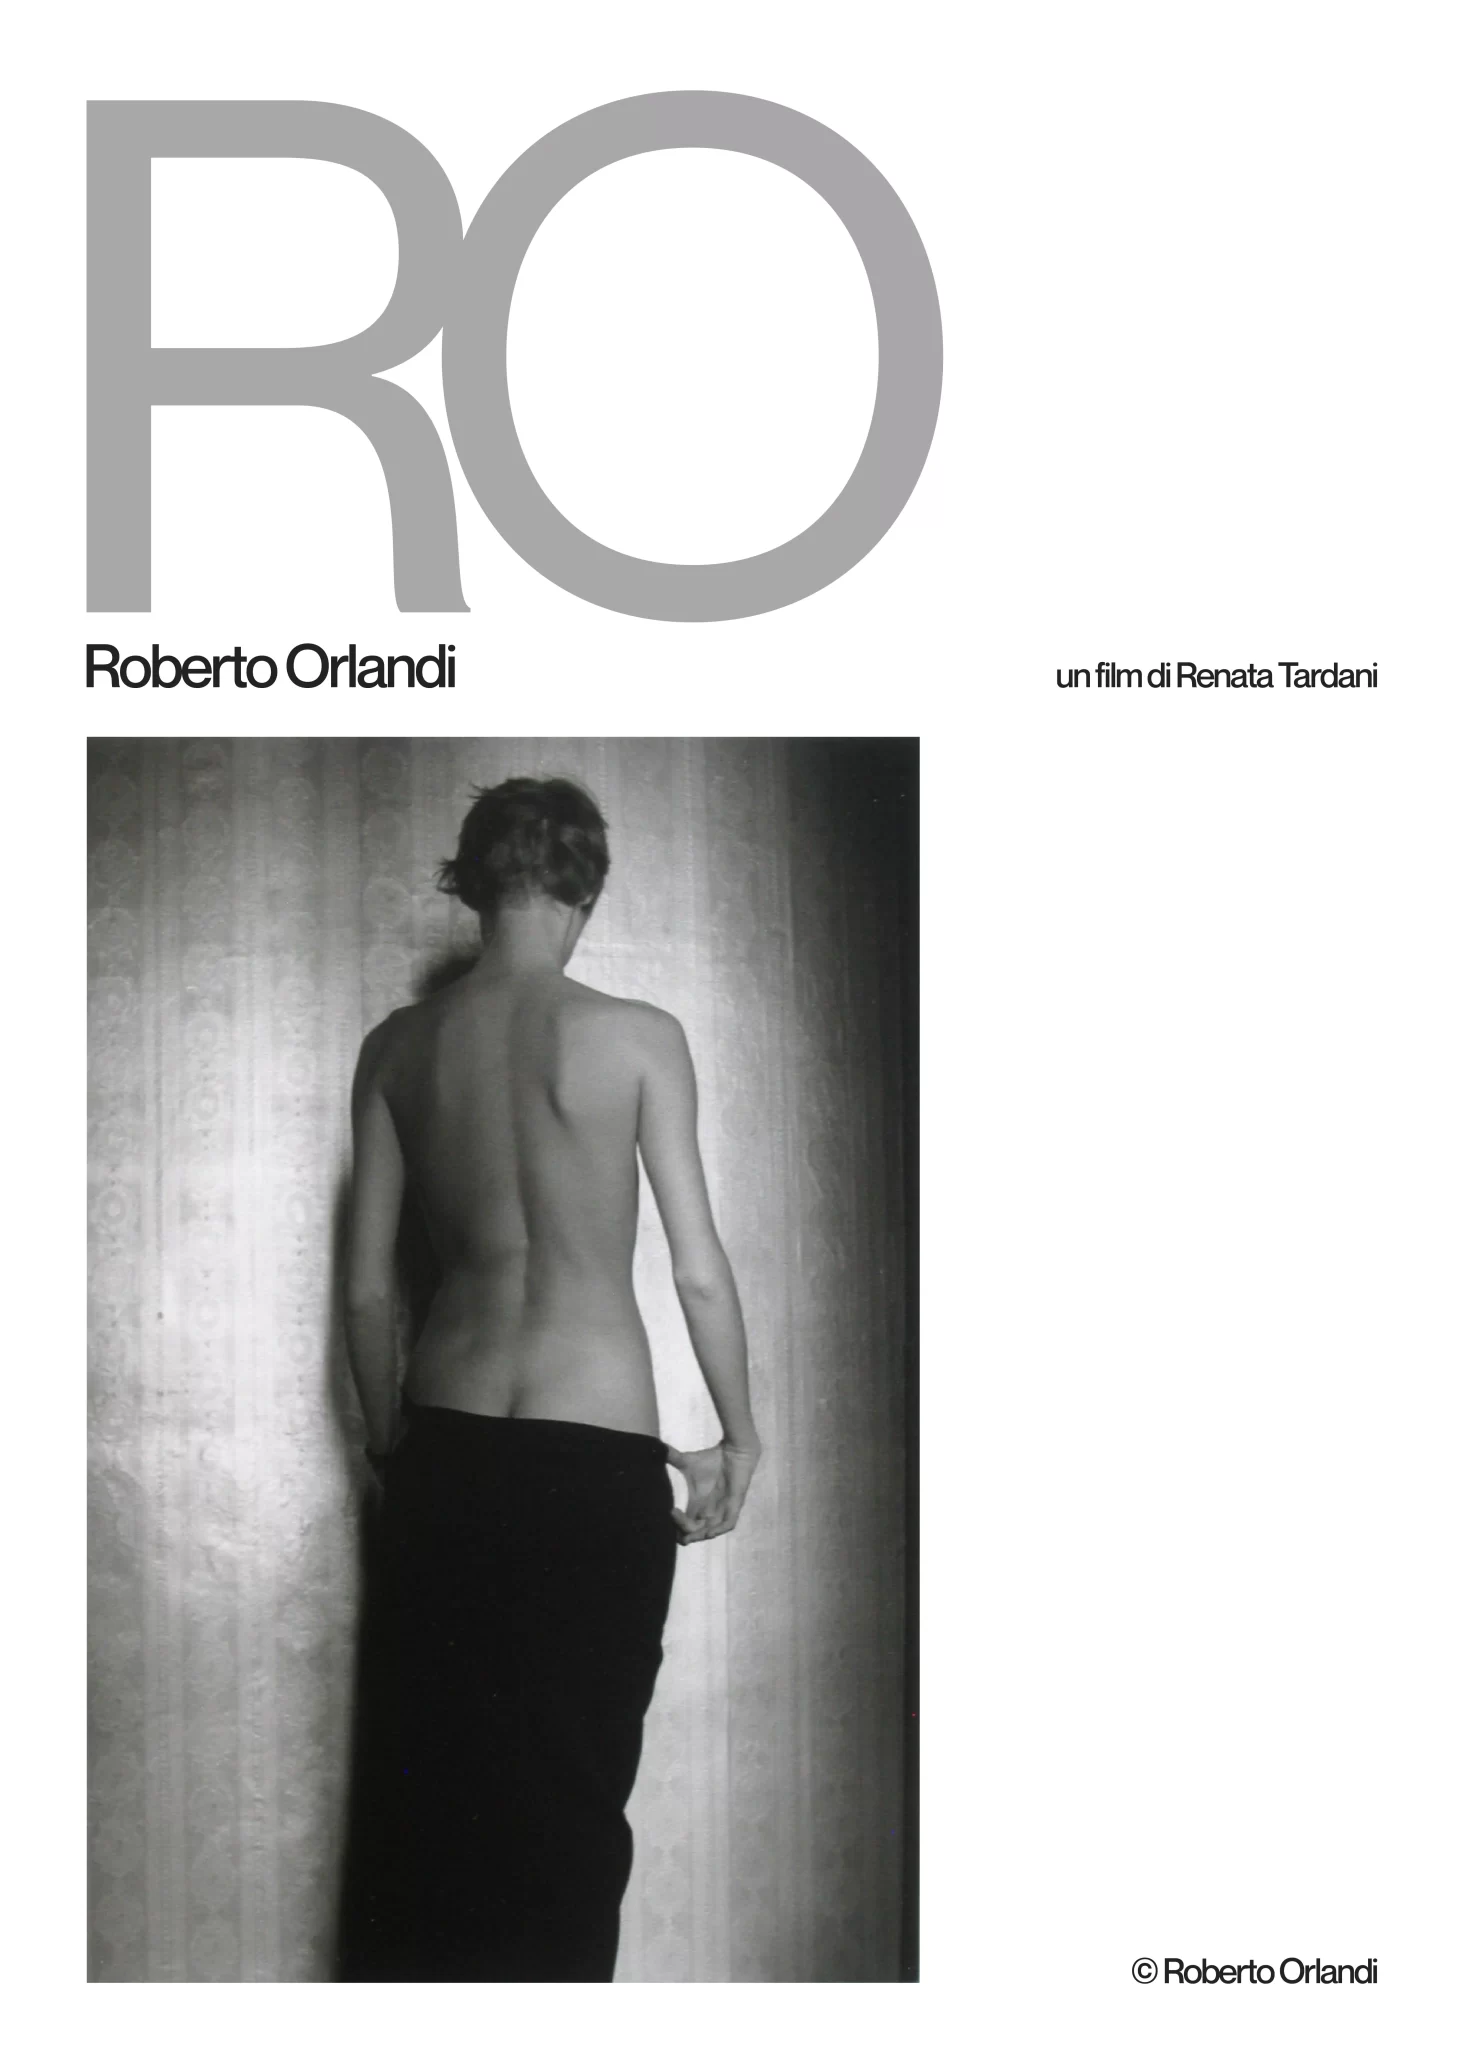 Locandina: RO, Roberto Orlandi, un film di Renata Tardani. Fotografia di un nudo artistico scattata da Roberto Orlandi.